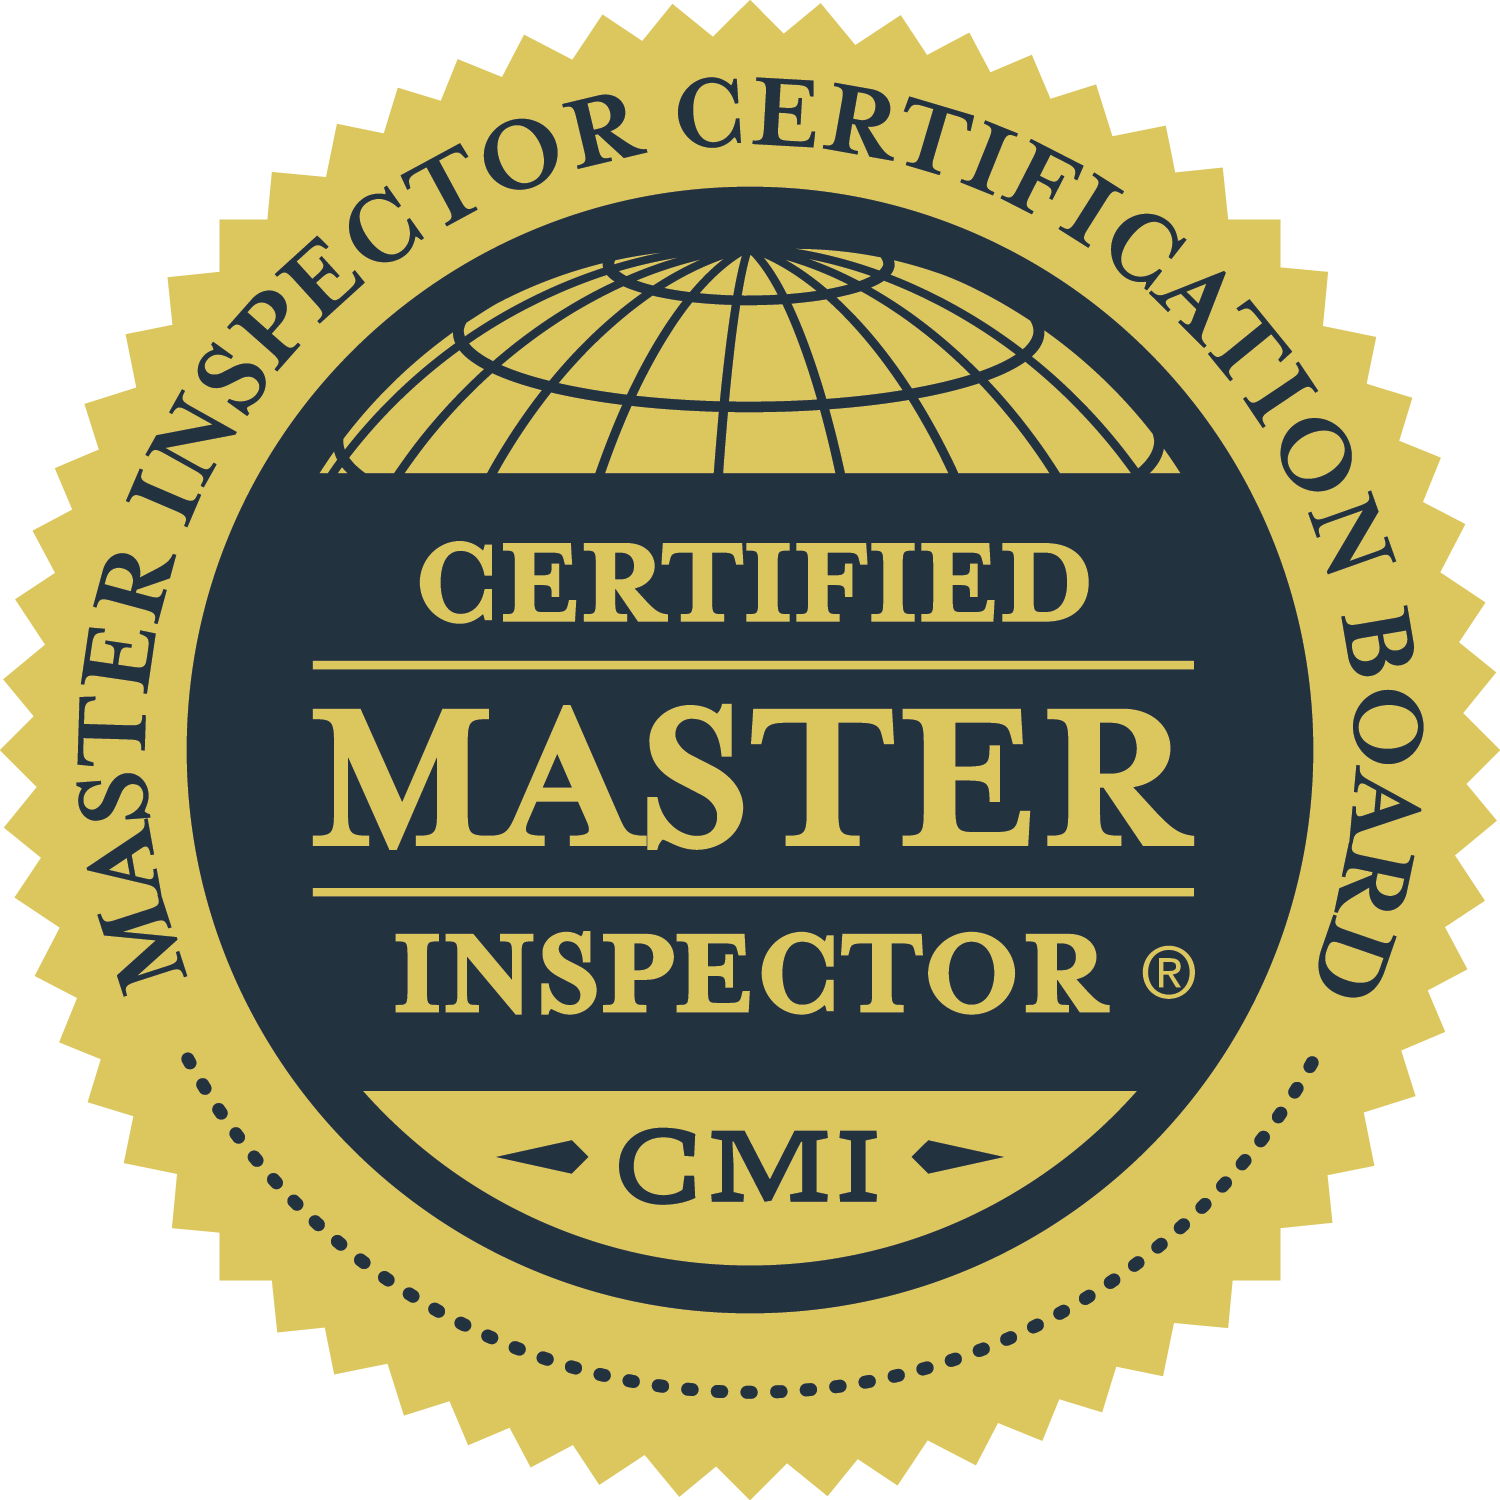 Cirtification Logo - Certifed Master Inspector® Logos | Certified Master Inspector®